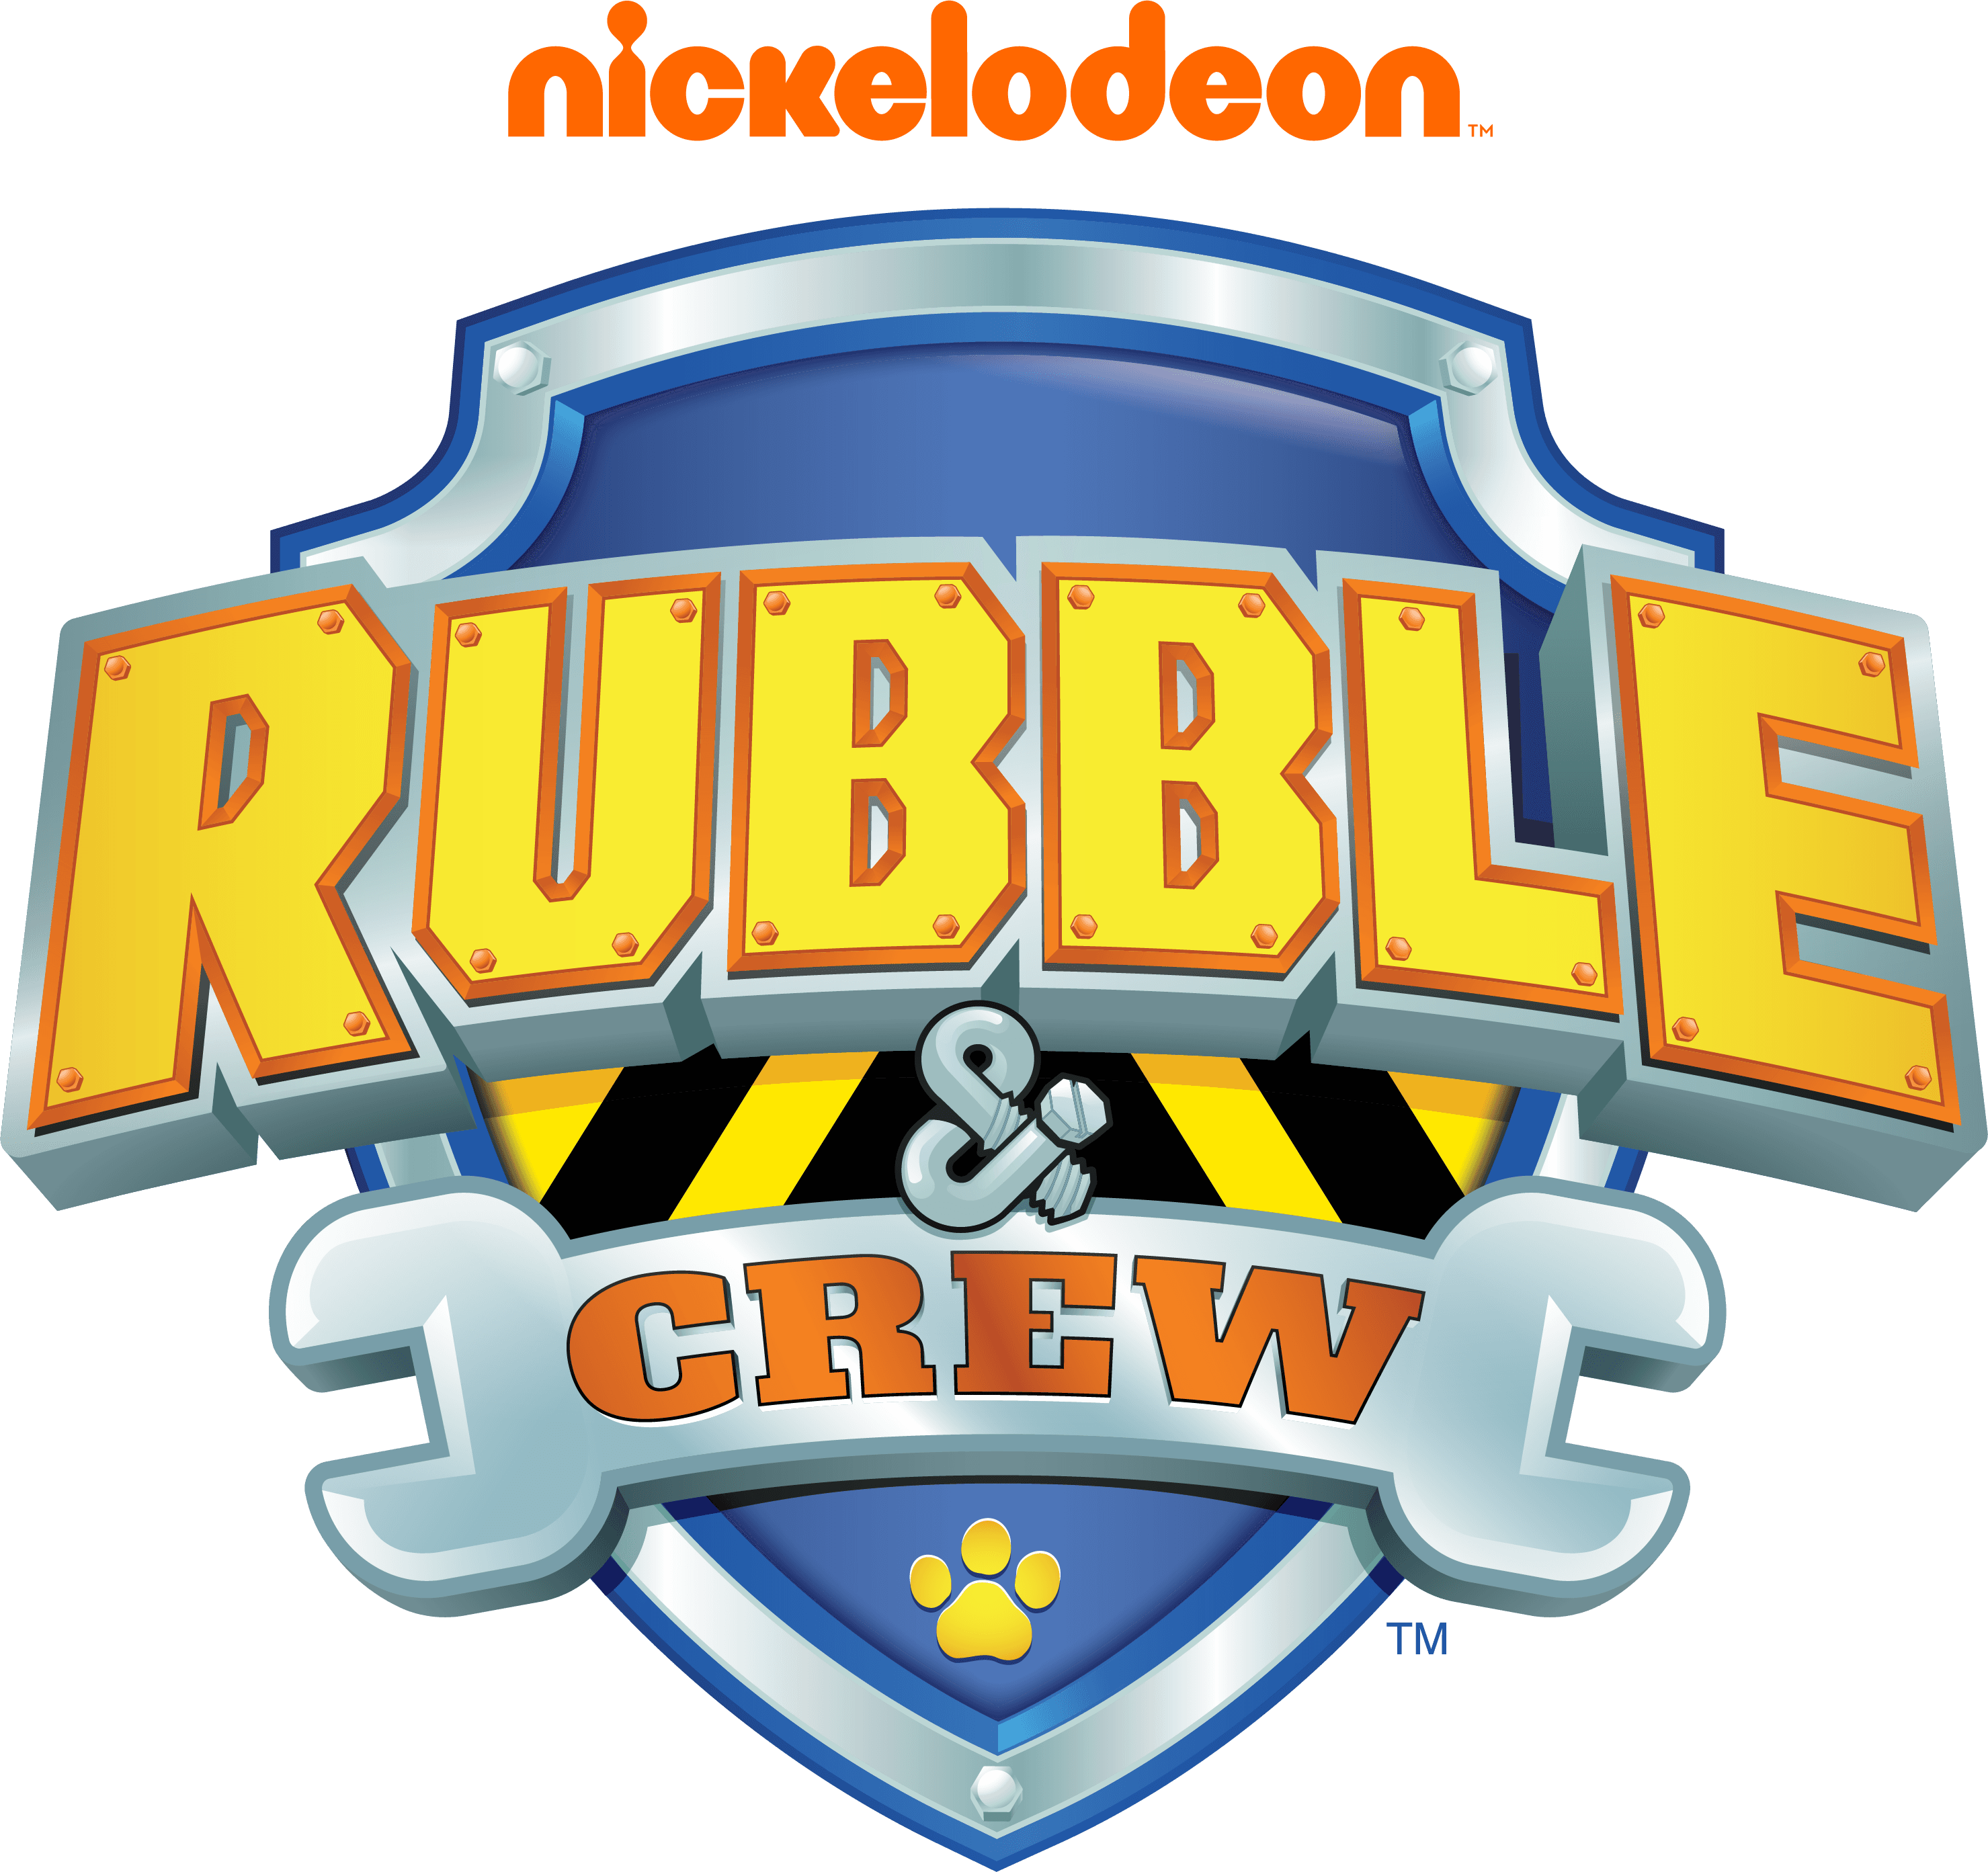 Rubble & Crew logo